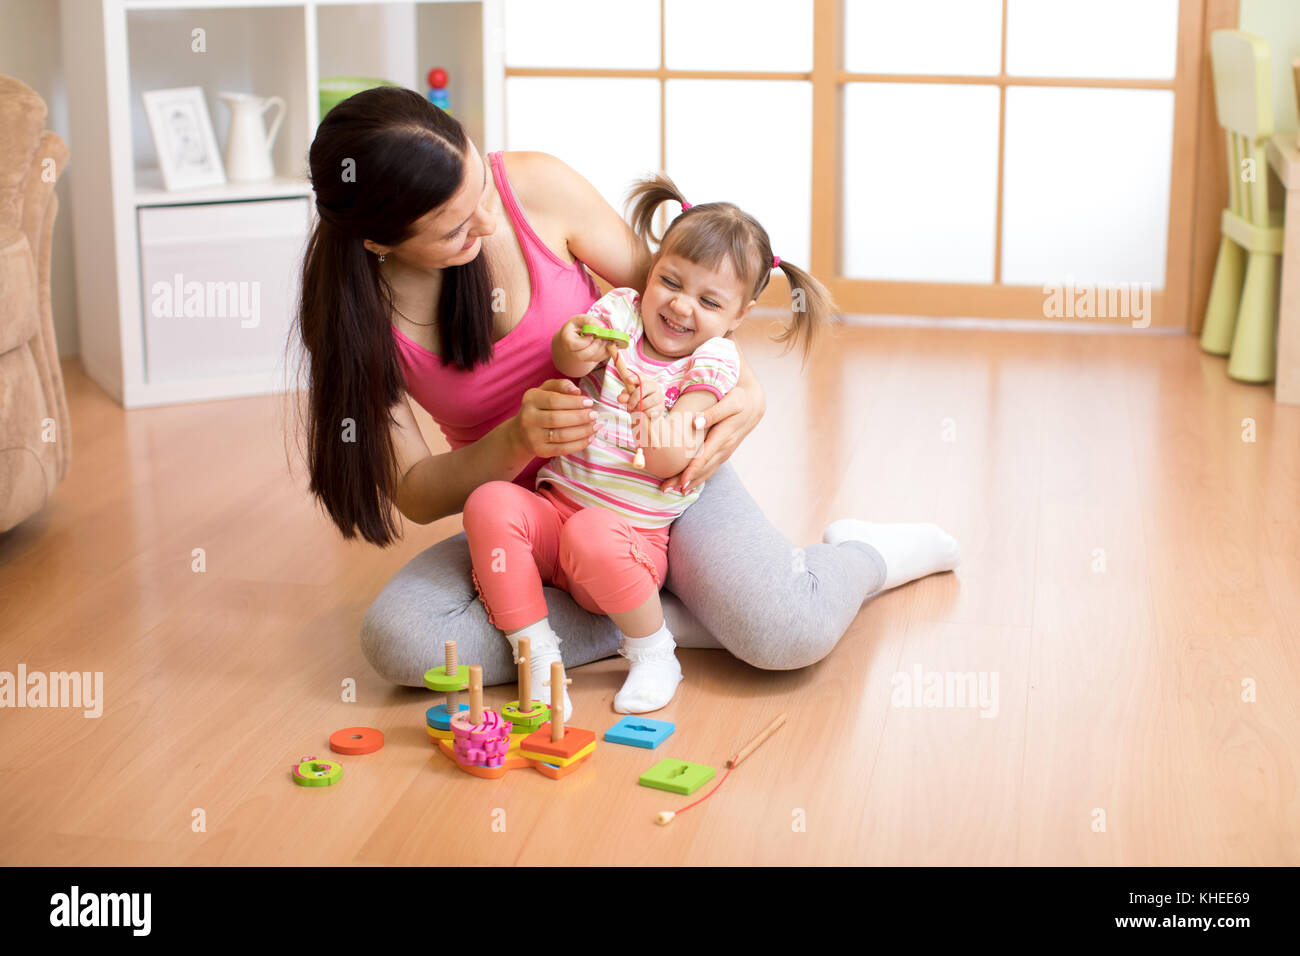 Mutter spielt mit Kind Tochter auf dem Boden Stockfoto